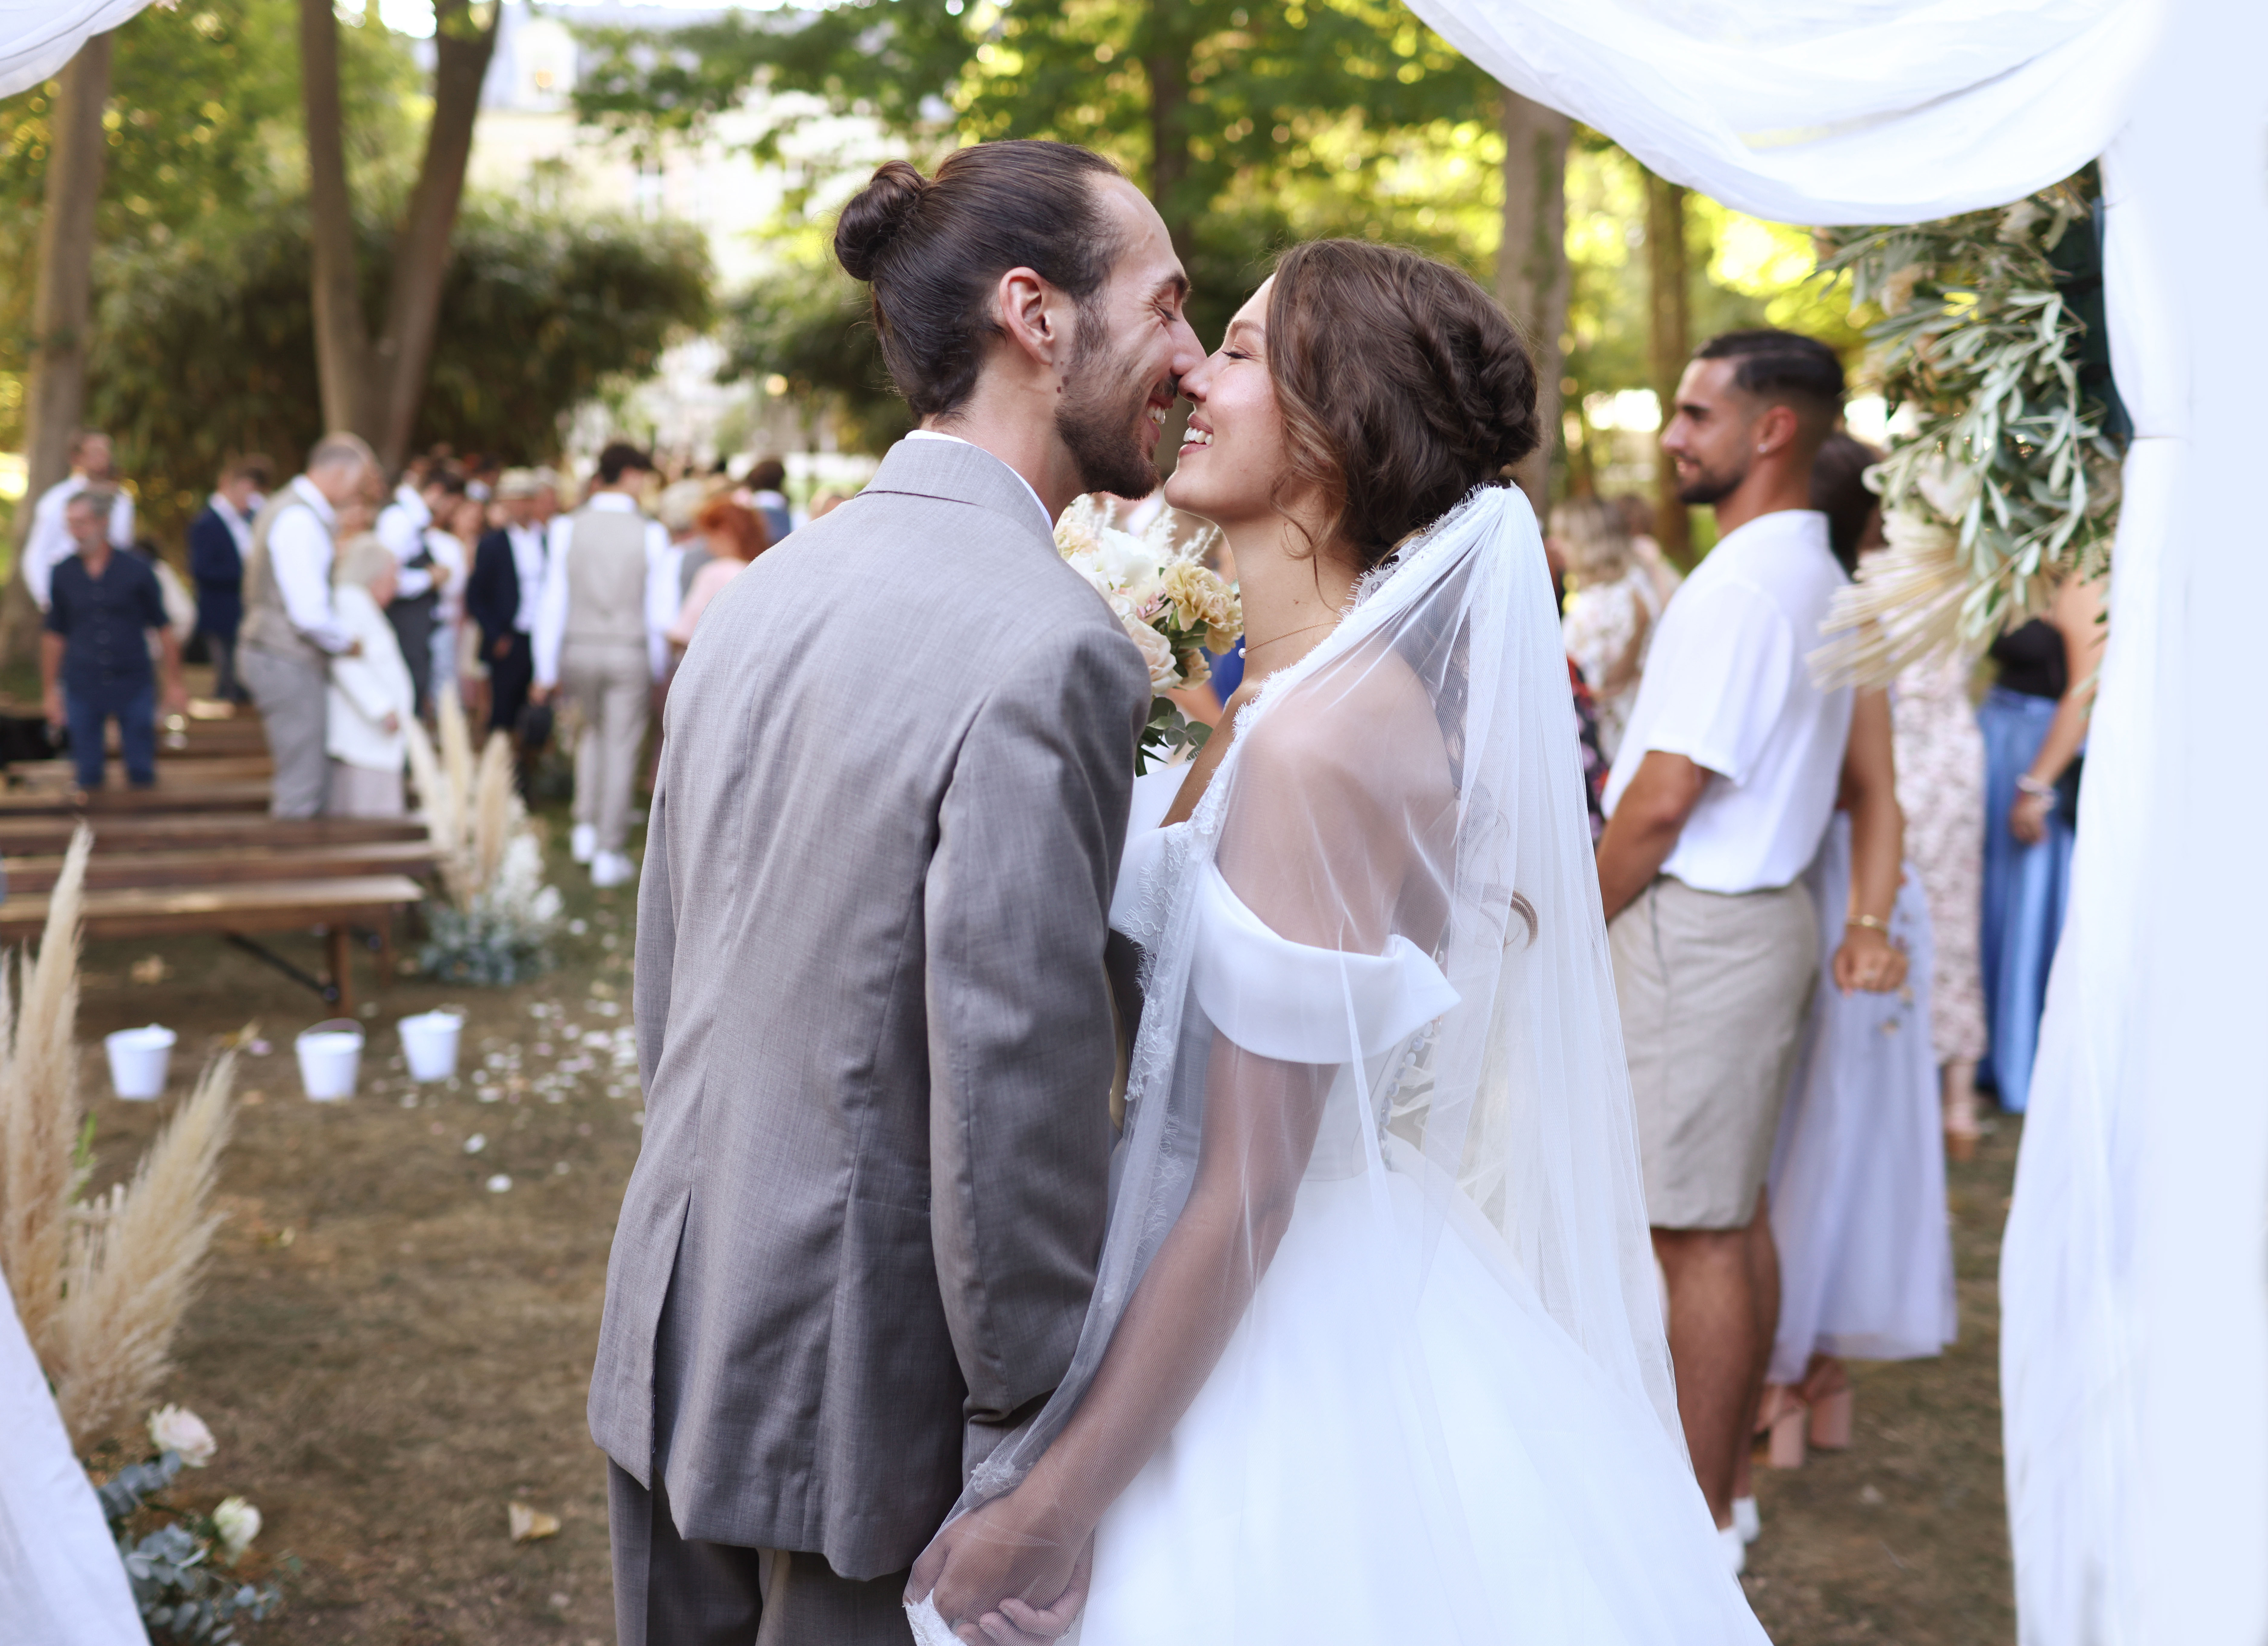 Eine glückliche Hochzeit | Quelle: Getty Images